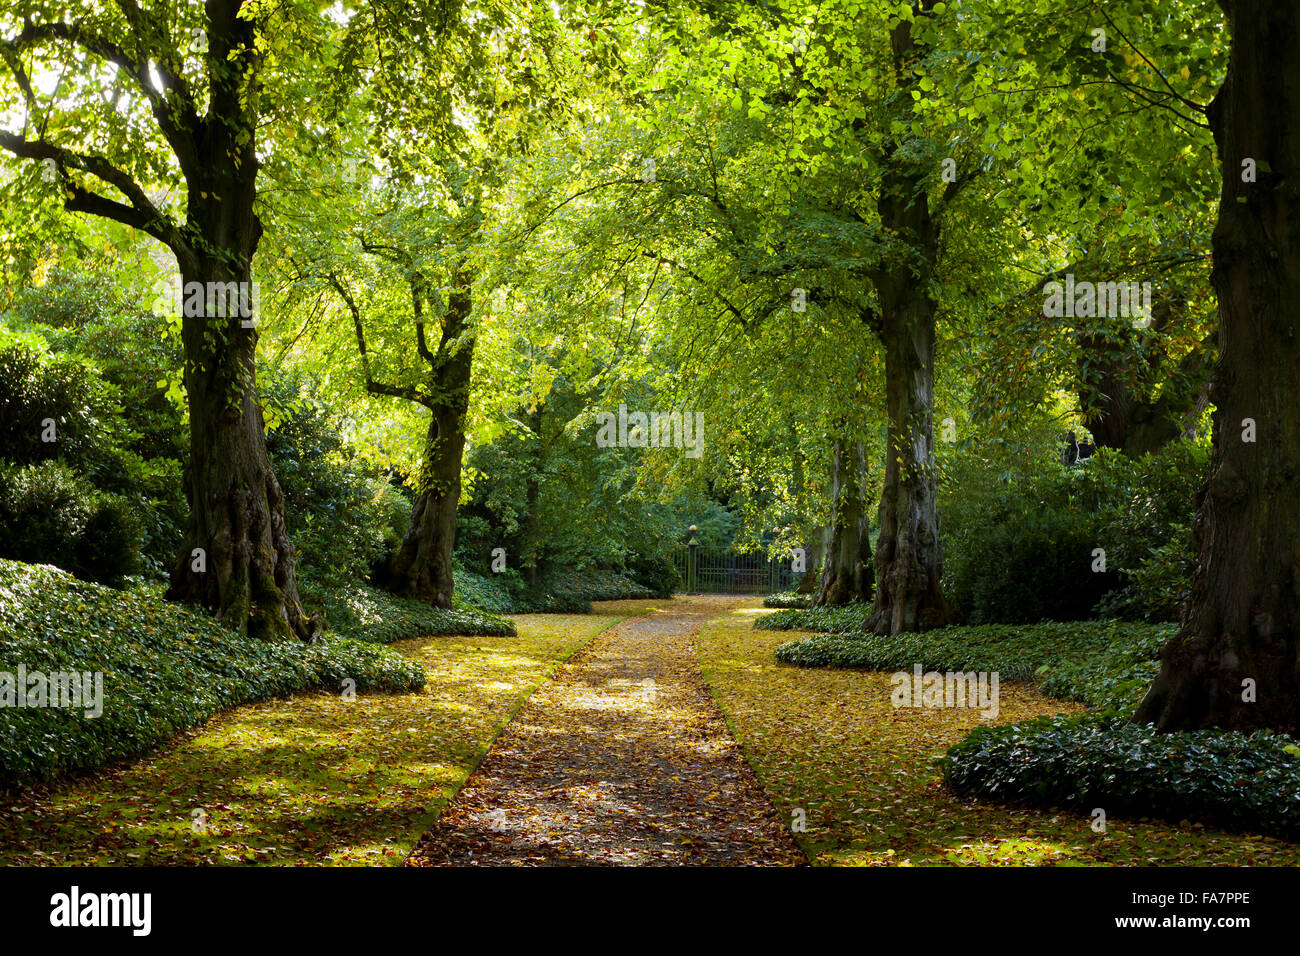 L'Avenue de la chaux en octobre à Biddulph Grange Jardin, Staffordshire. Banque D'Images